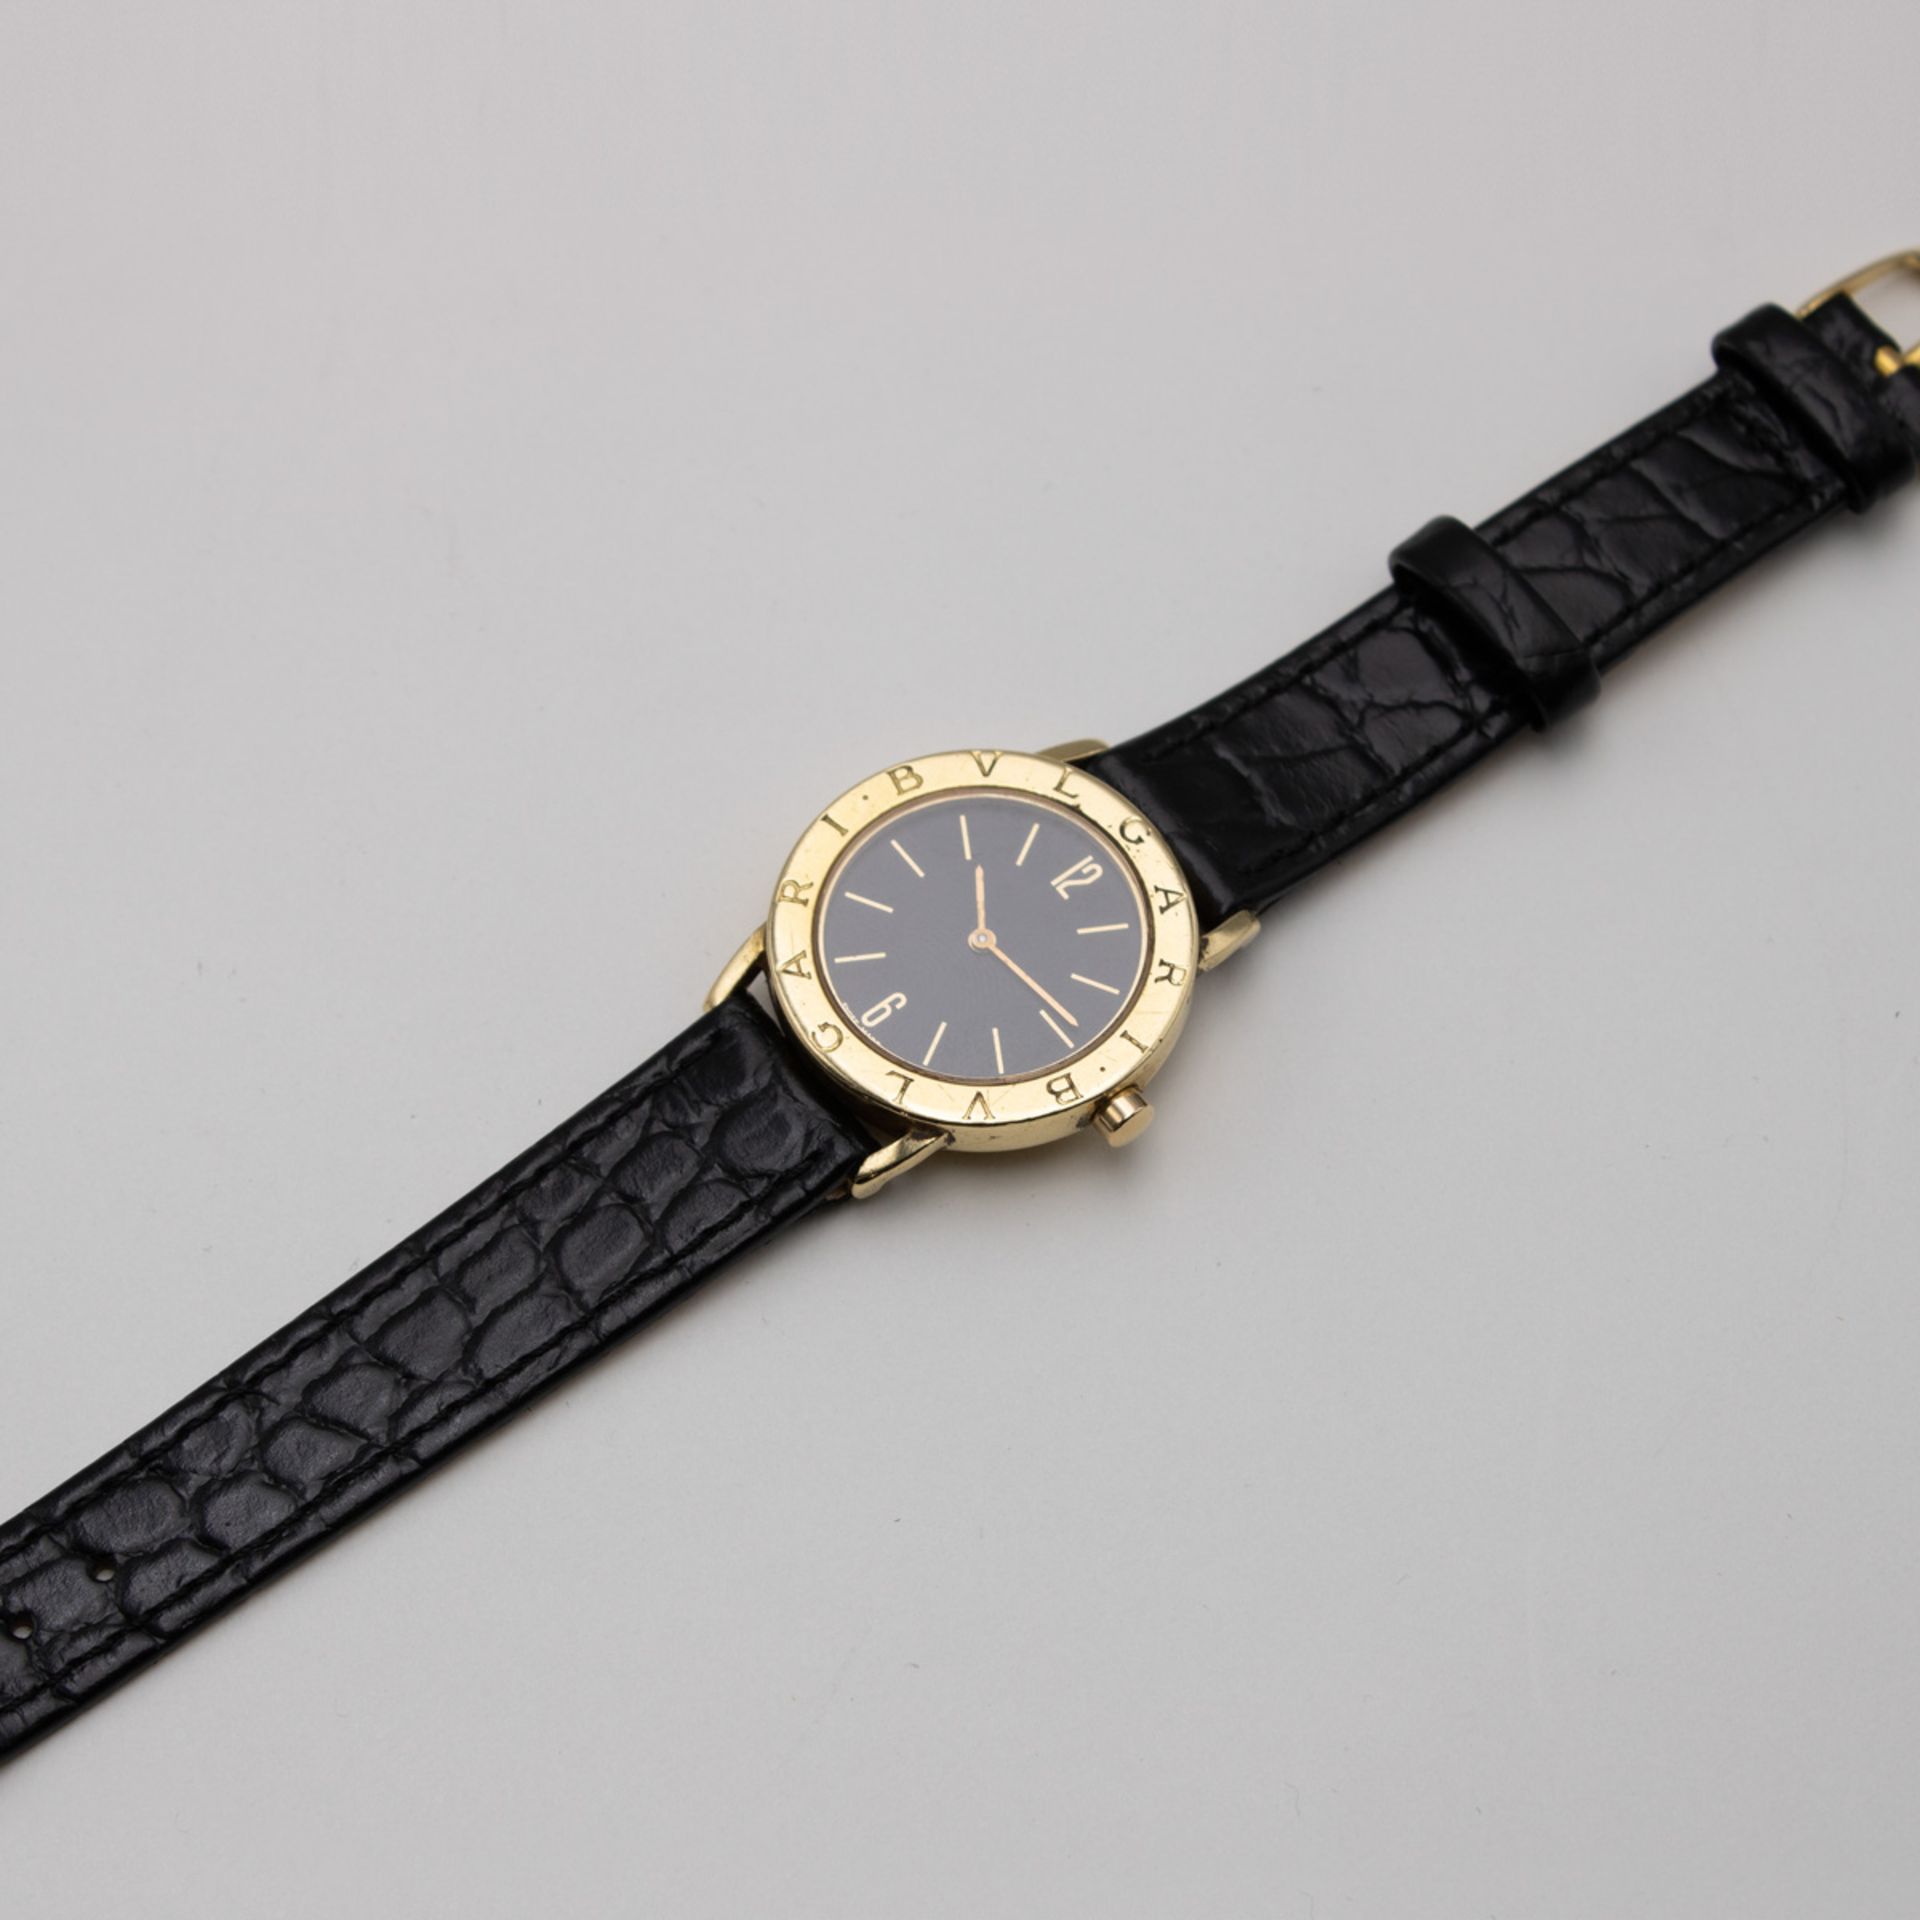 Bulgari vintage wristwatch - Image 2 of 4